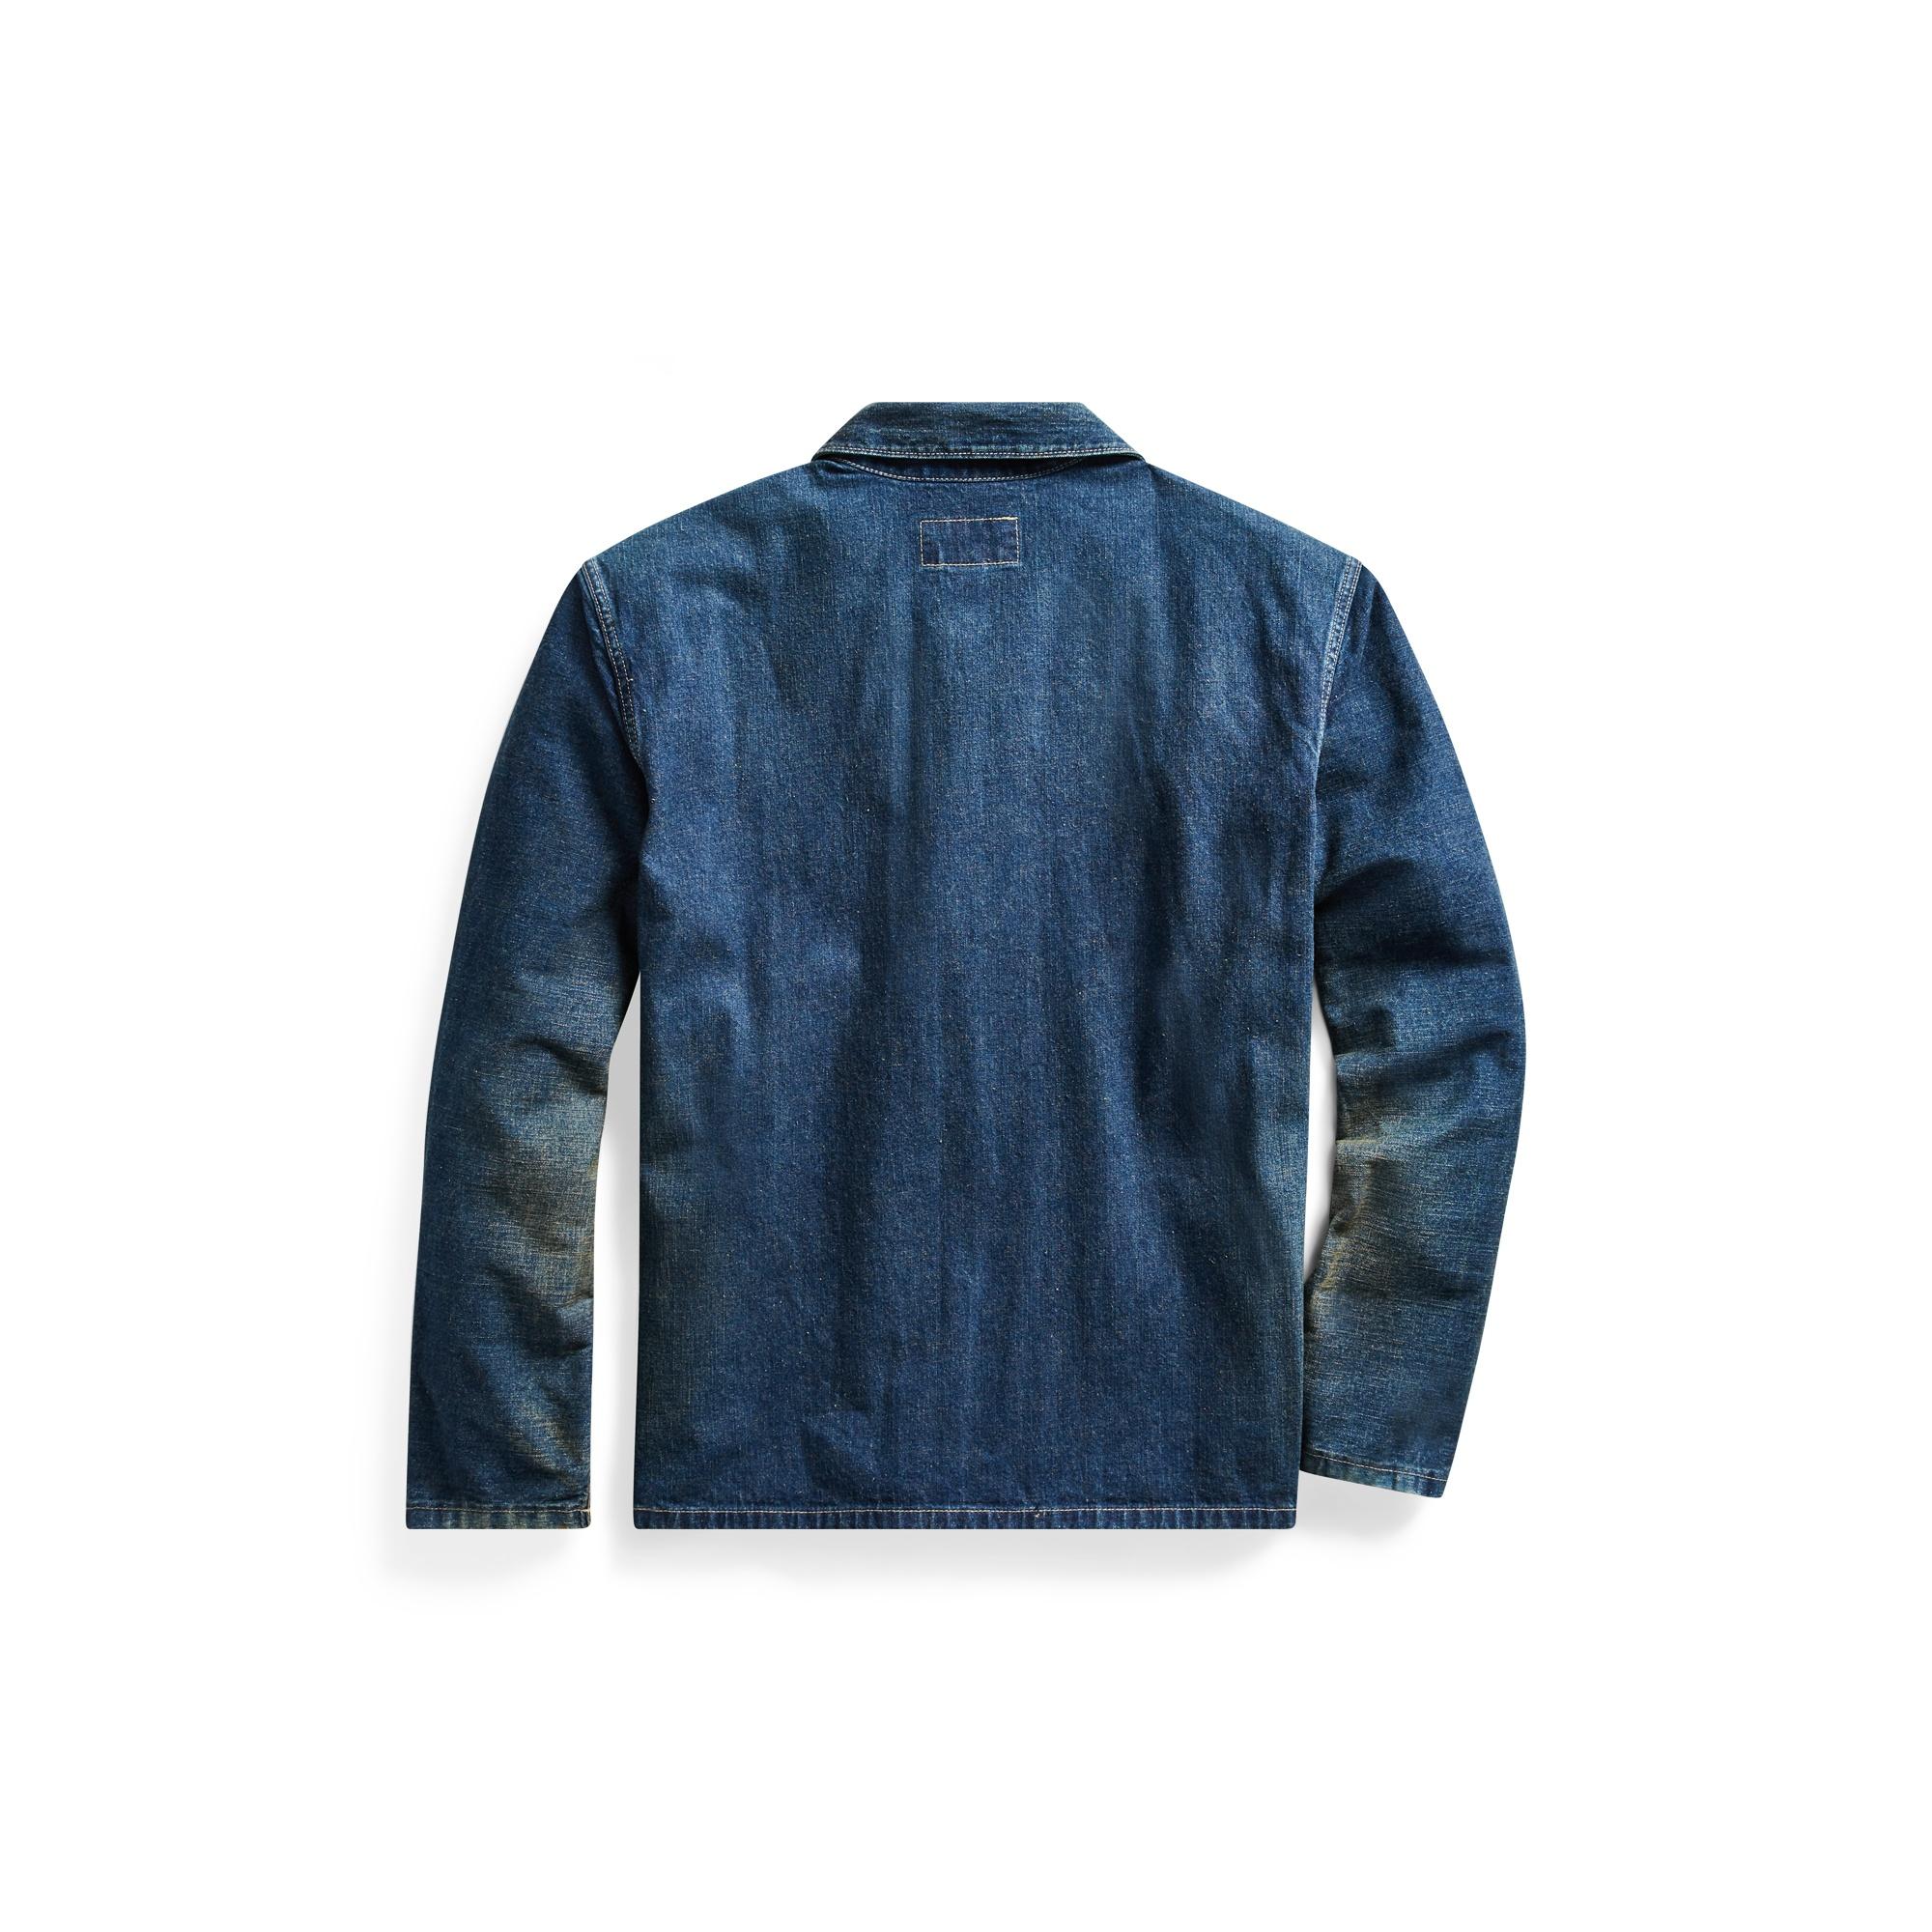 RRL Selvedge Denim Work Jacket in Blue for Men - Lyst